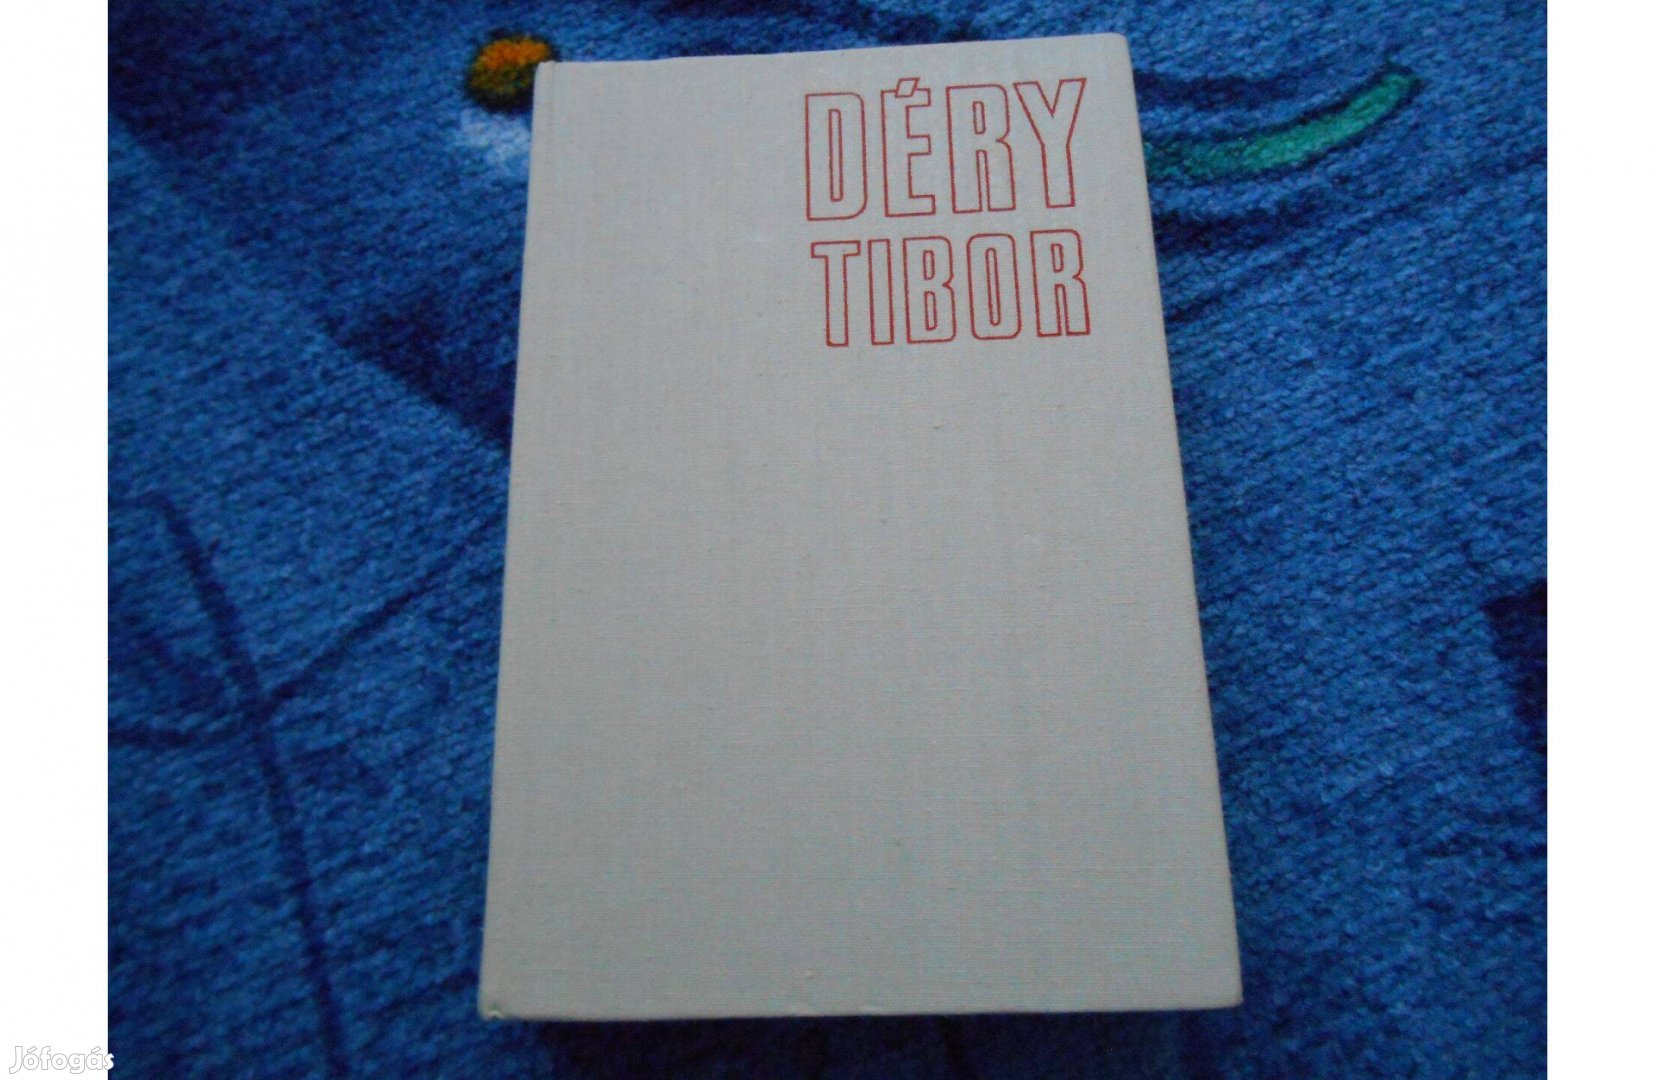 Déry Tibor: A befejezetlen mondat első kötet